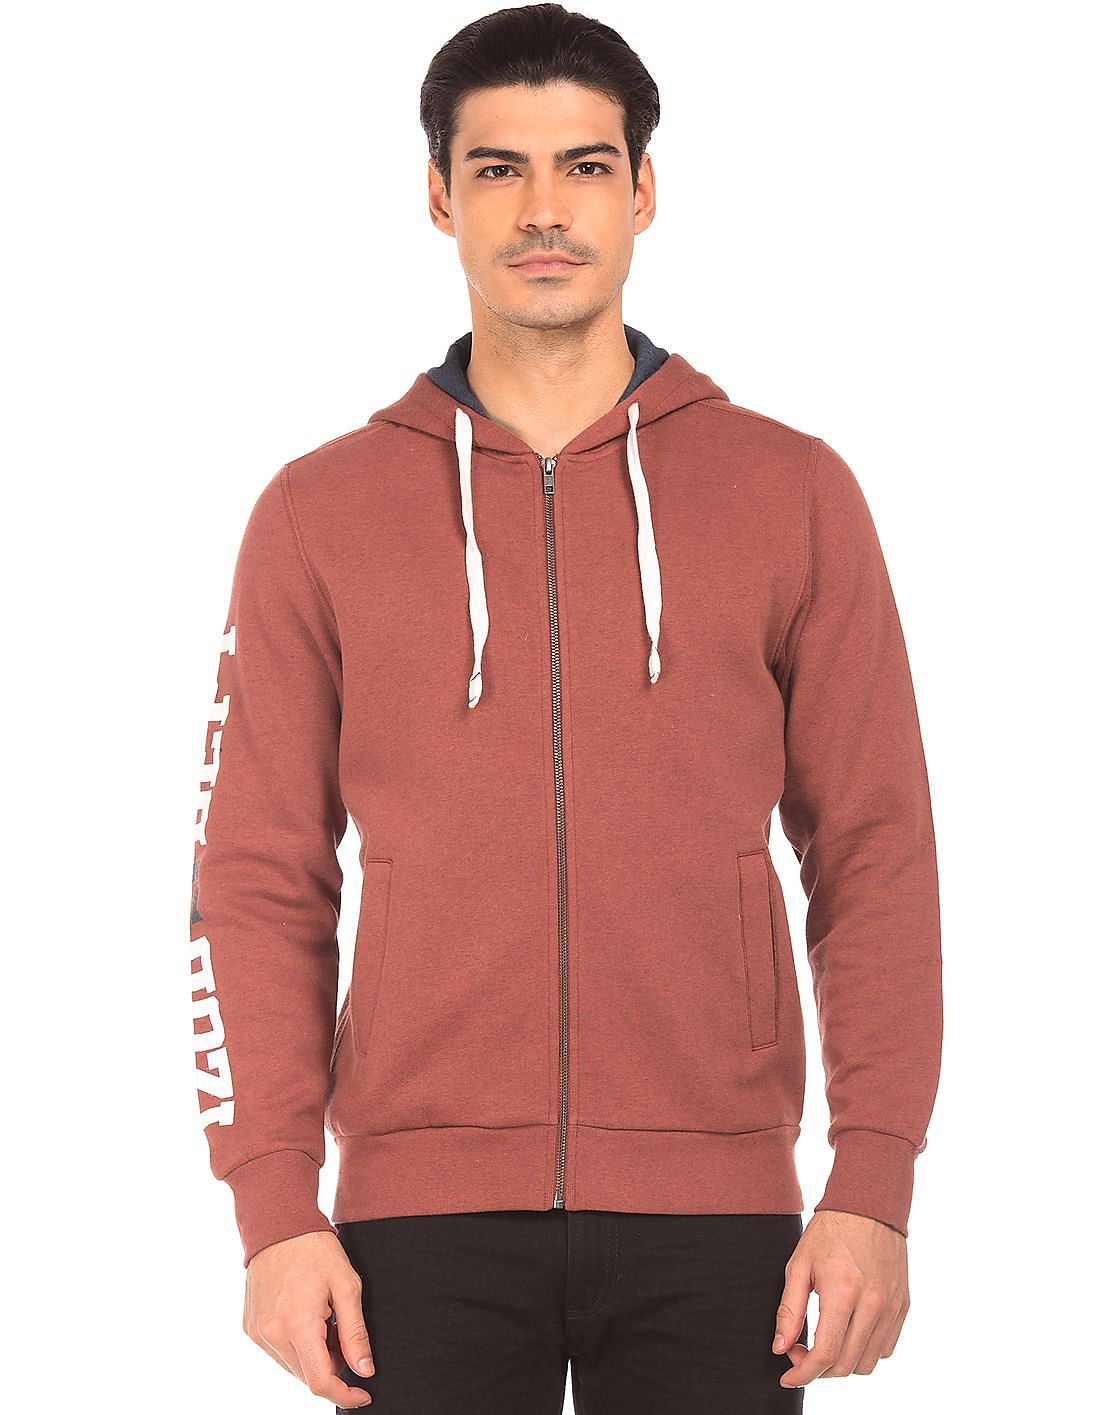 Buy Izod Men Hooded Zip Up Sweatshirt - NNNOW.com